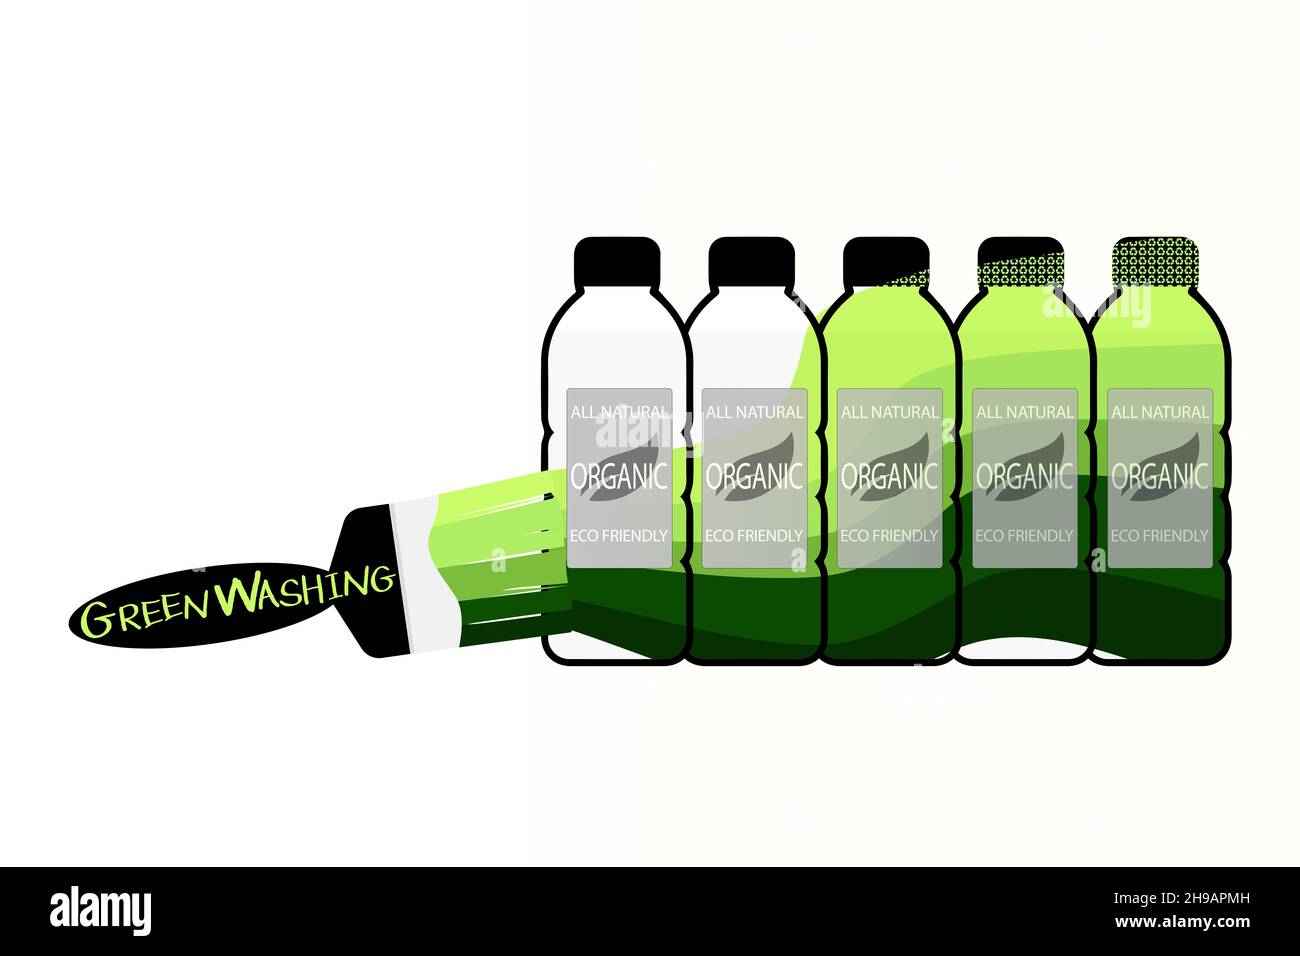 Greenwashing-Etiketten für Verbraucher, um irreführende Umweltinformationen zu geben, fünf Plastikflaschen grün gewaschen, um umweltfreundlich zu erscheinen. Stockfoto